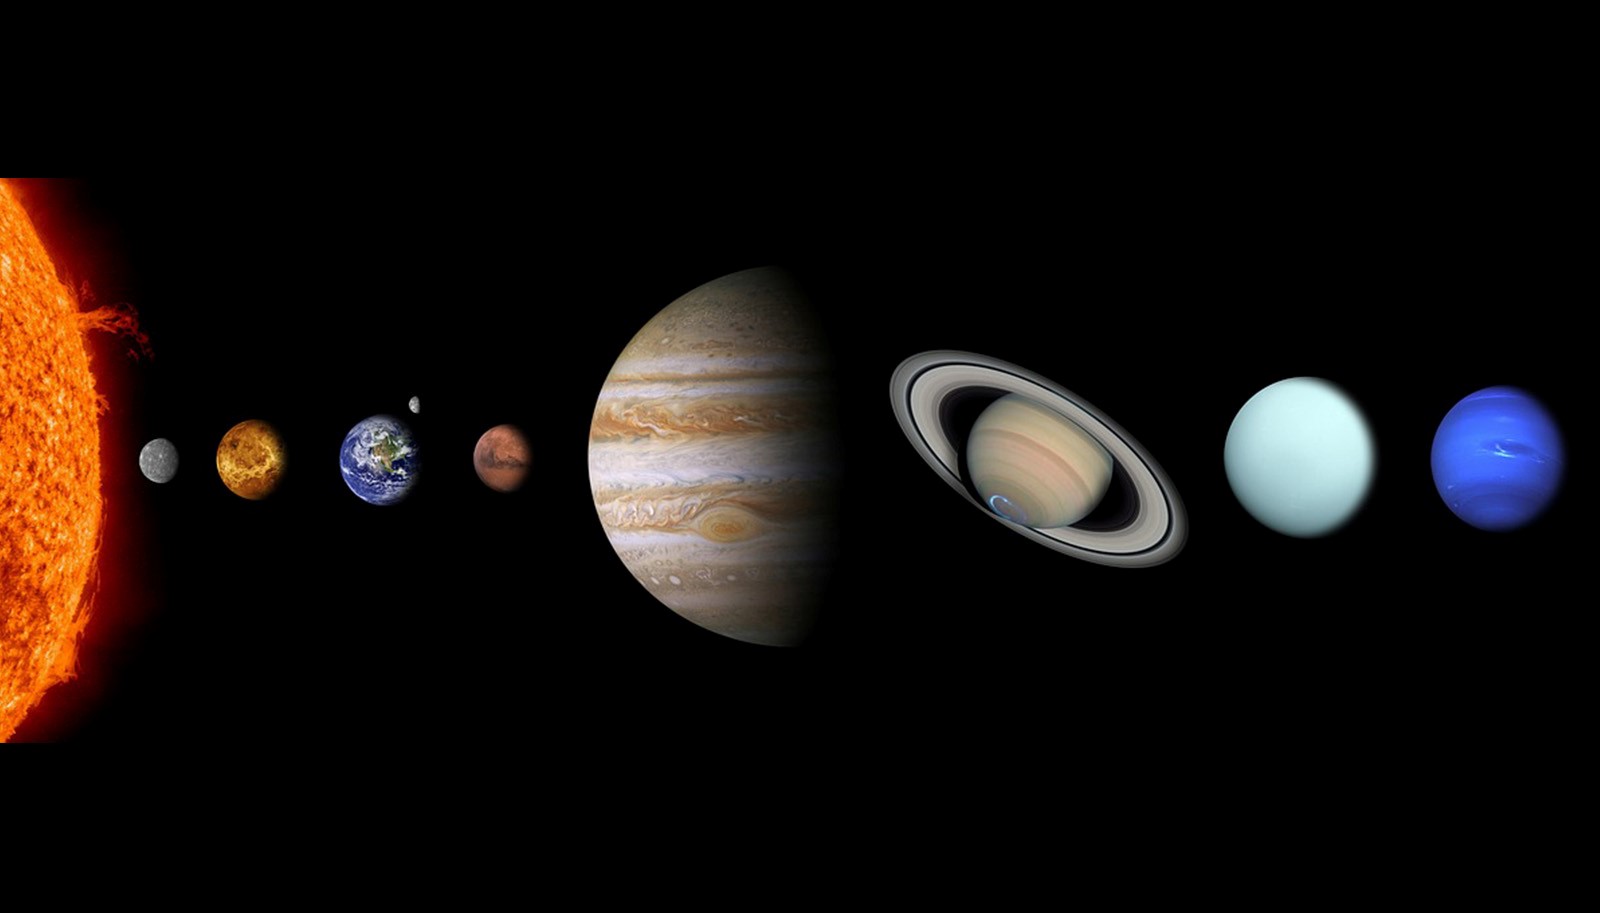 Apprendre le système solaire et ses planètes aux enfants - Family